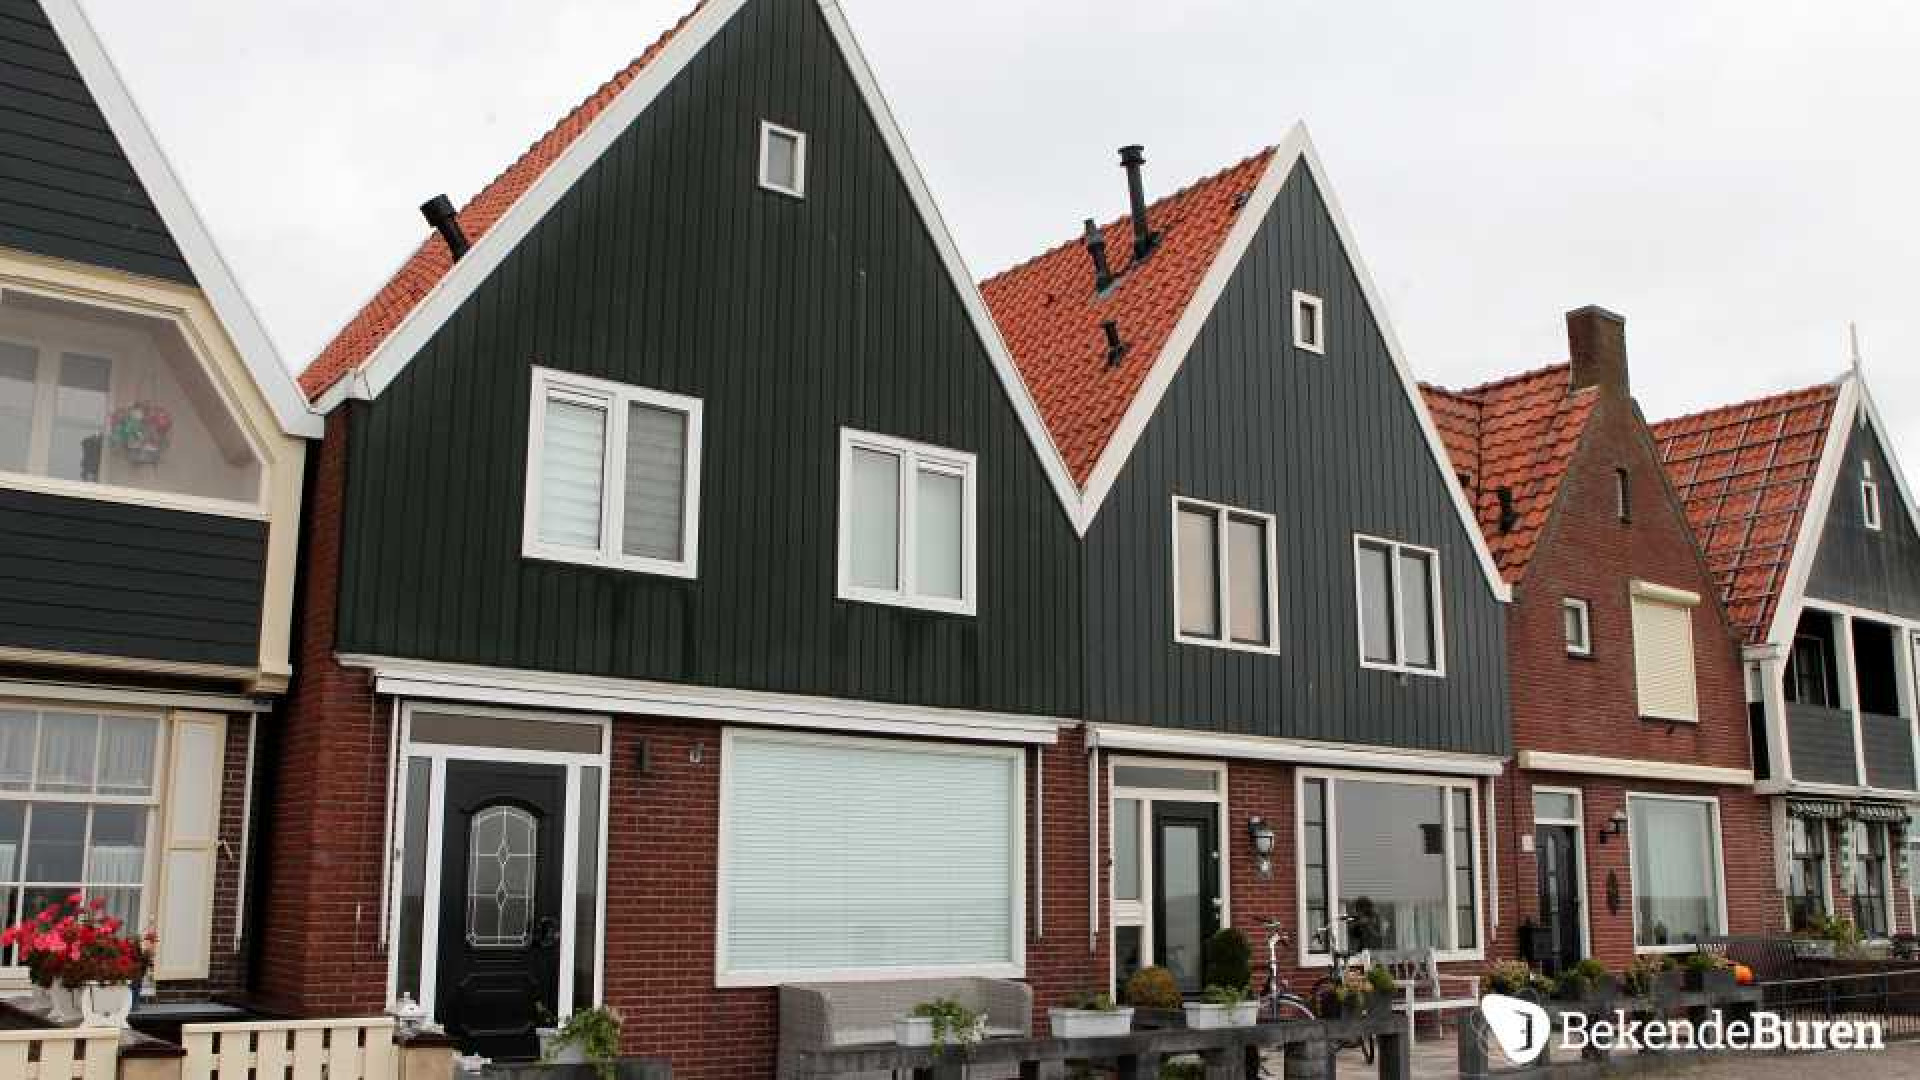 Jan Smit koopt dijkhuis in Volendam. Zie foto's